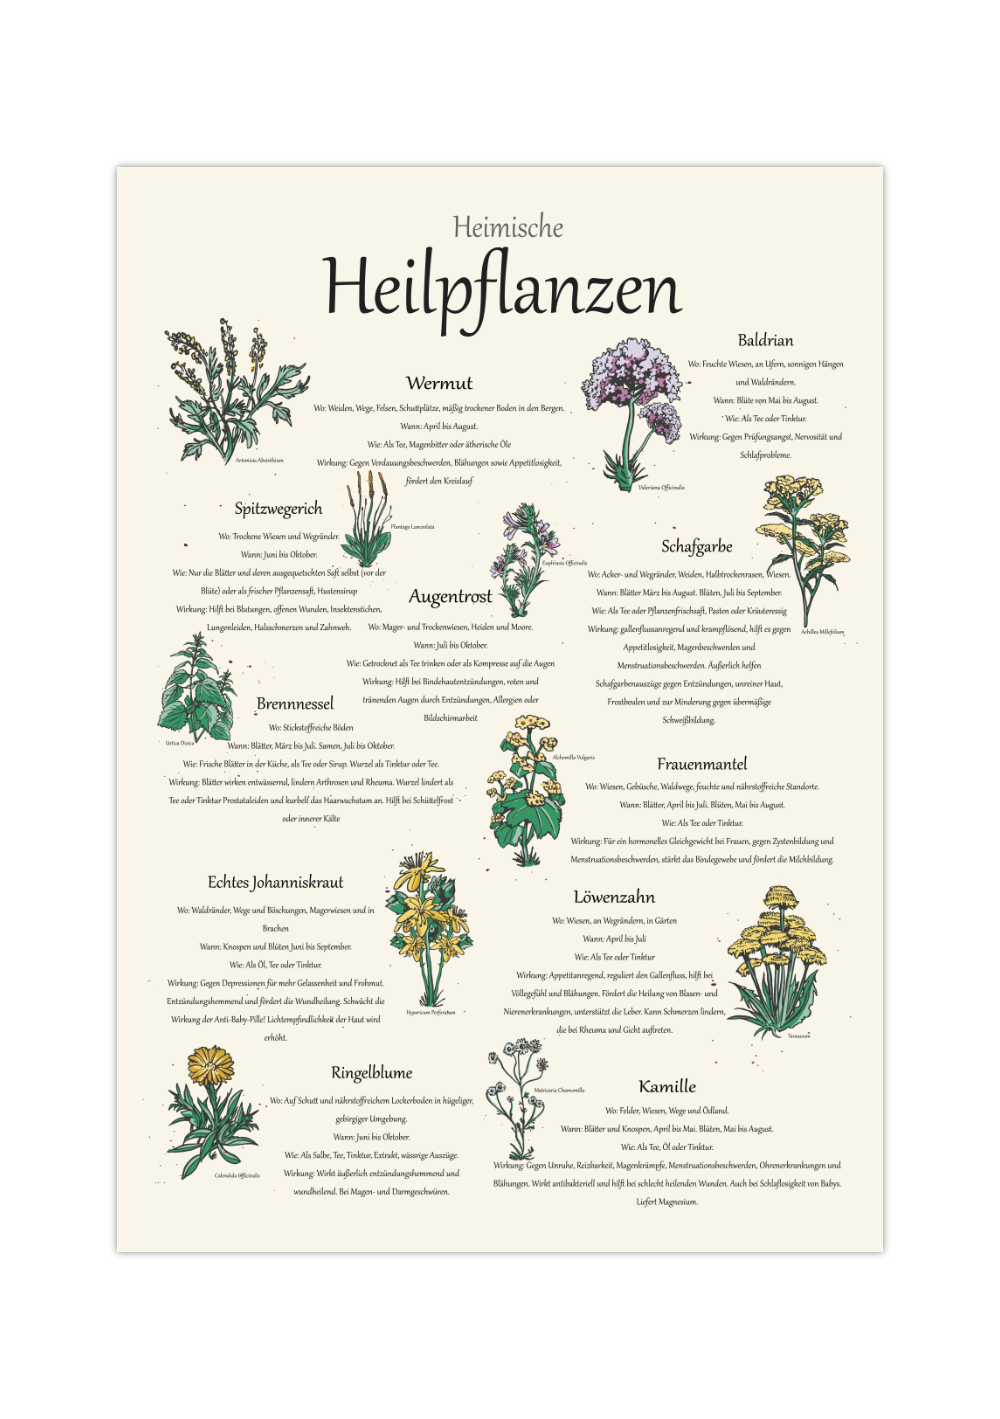 Das Poster zeigt 11 heimische Heilkräuter mit gezeichneten Illustrationen, wo du die Kräuter findest, wann sie blühen, die Zubereitung und Wirkungen. 